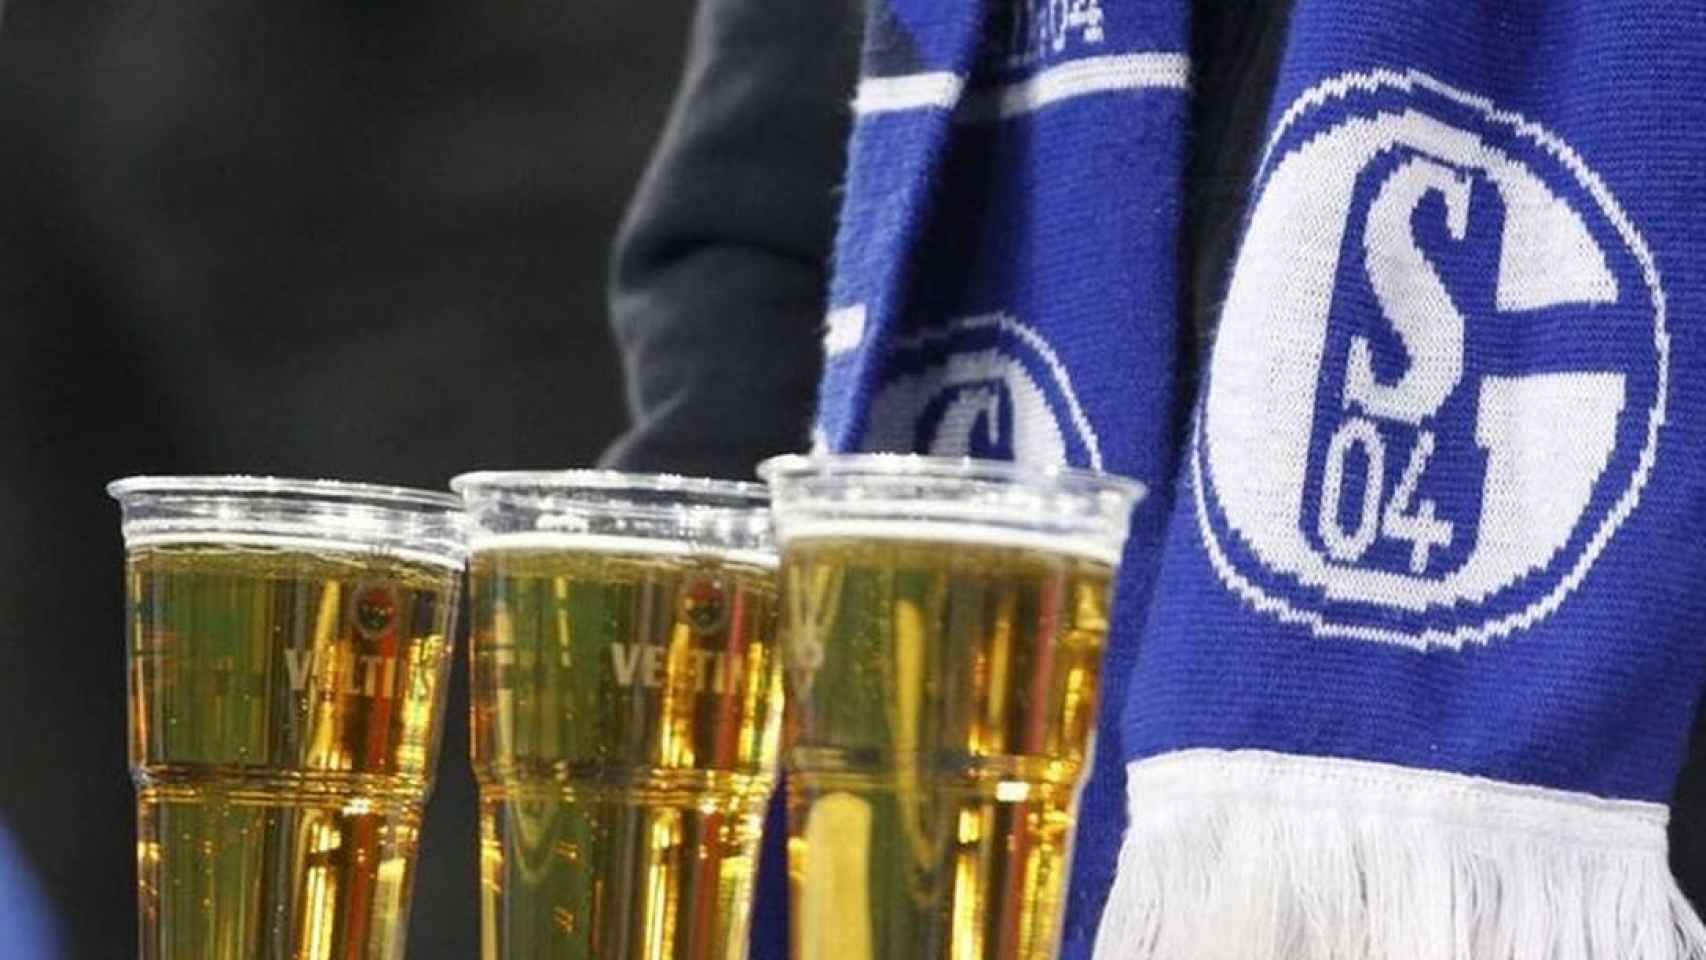 Varios vasos de cerveza junto a una bufanda del Schalke